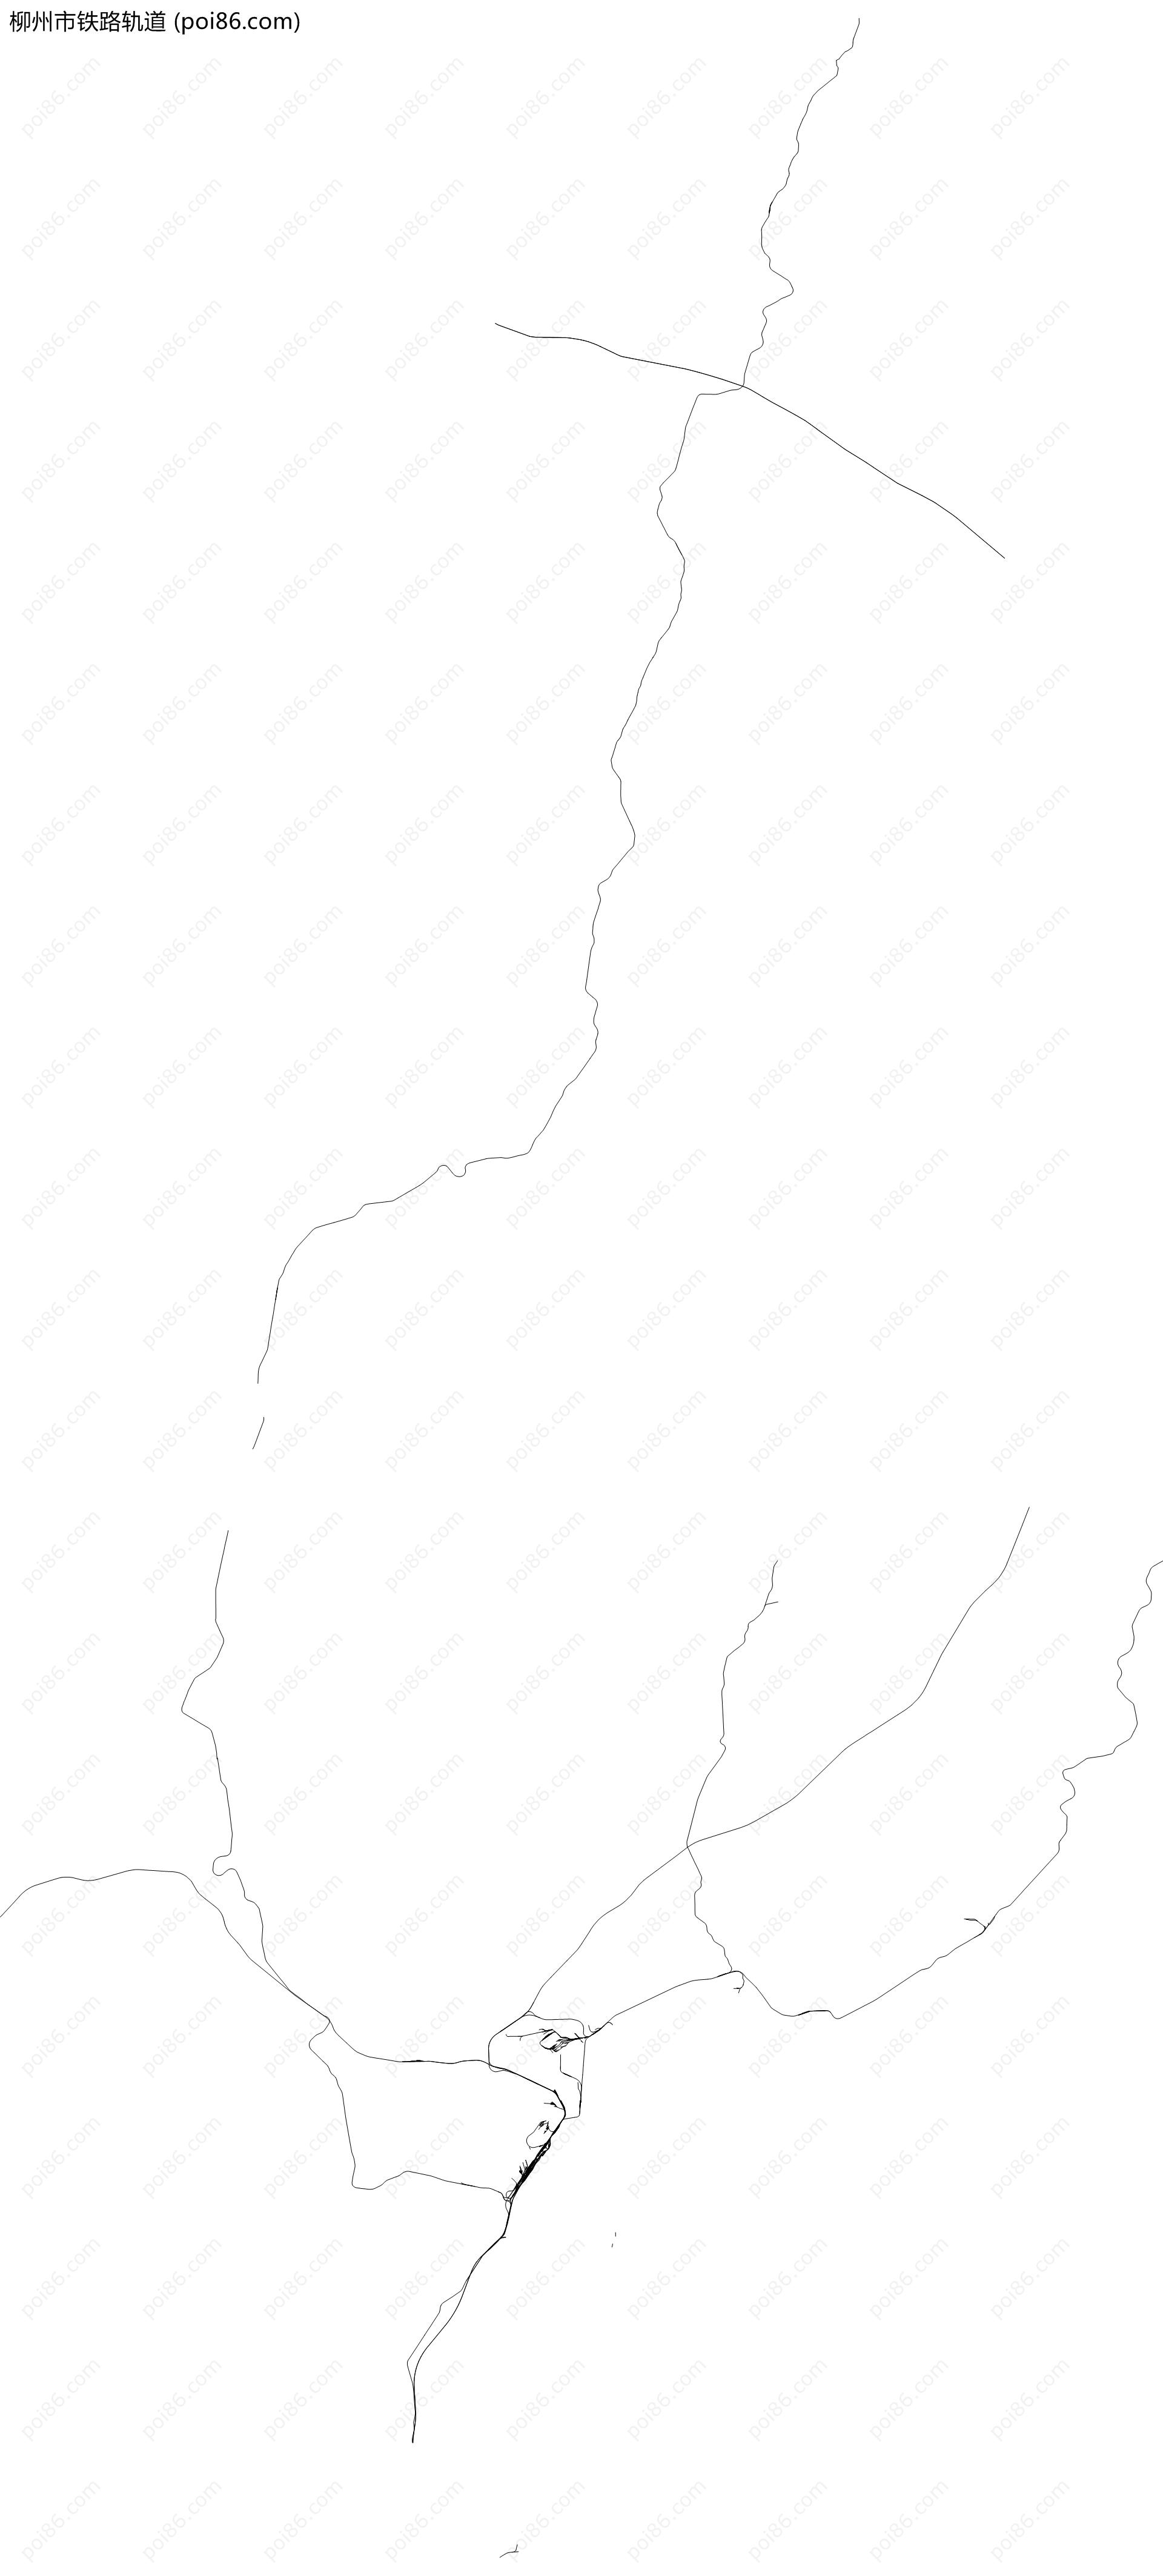 柳州市铁路轨道地图